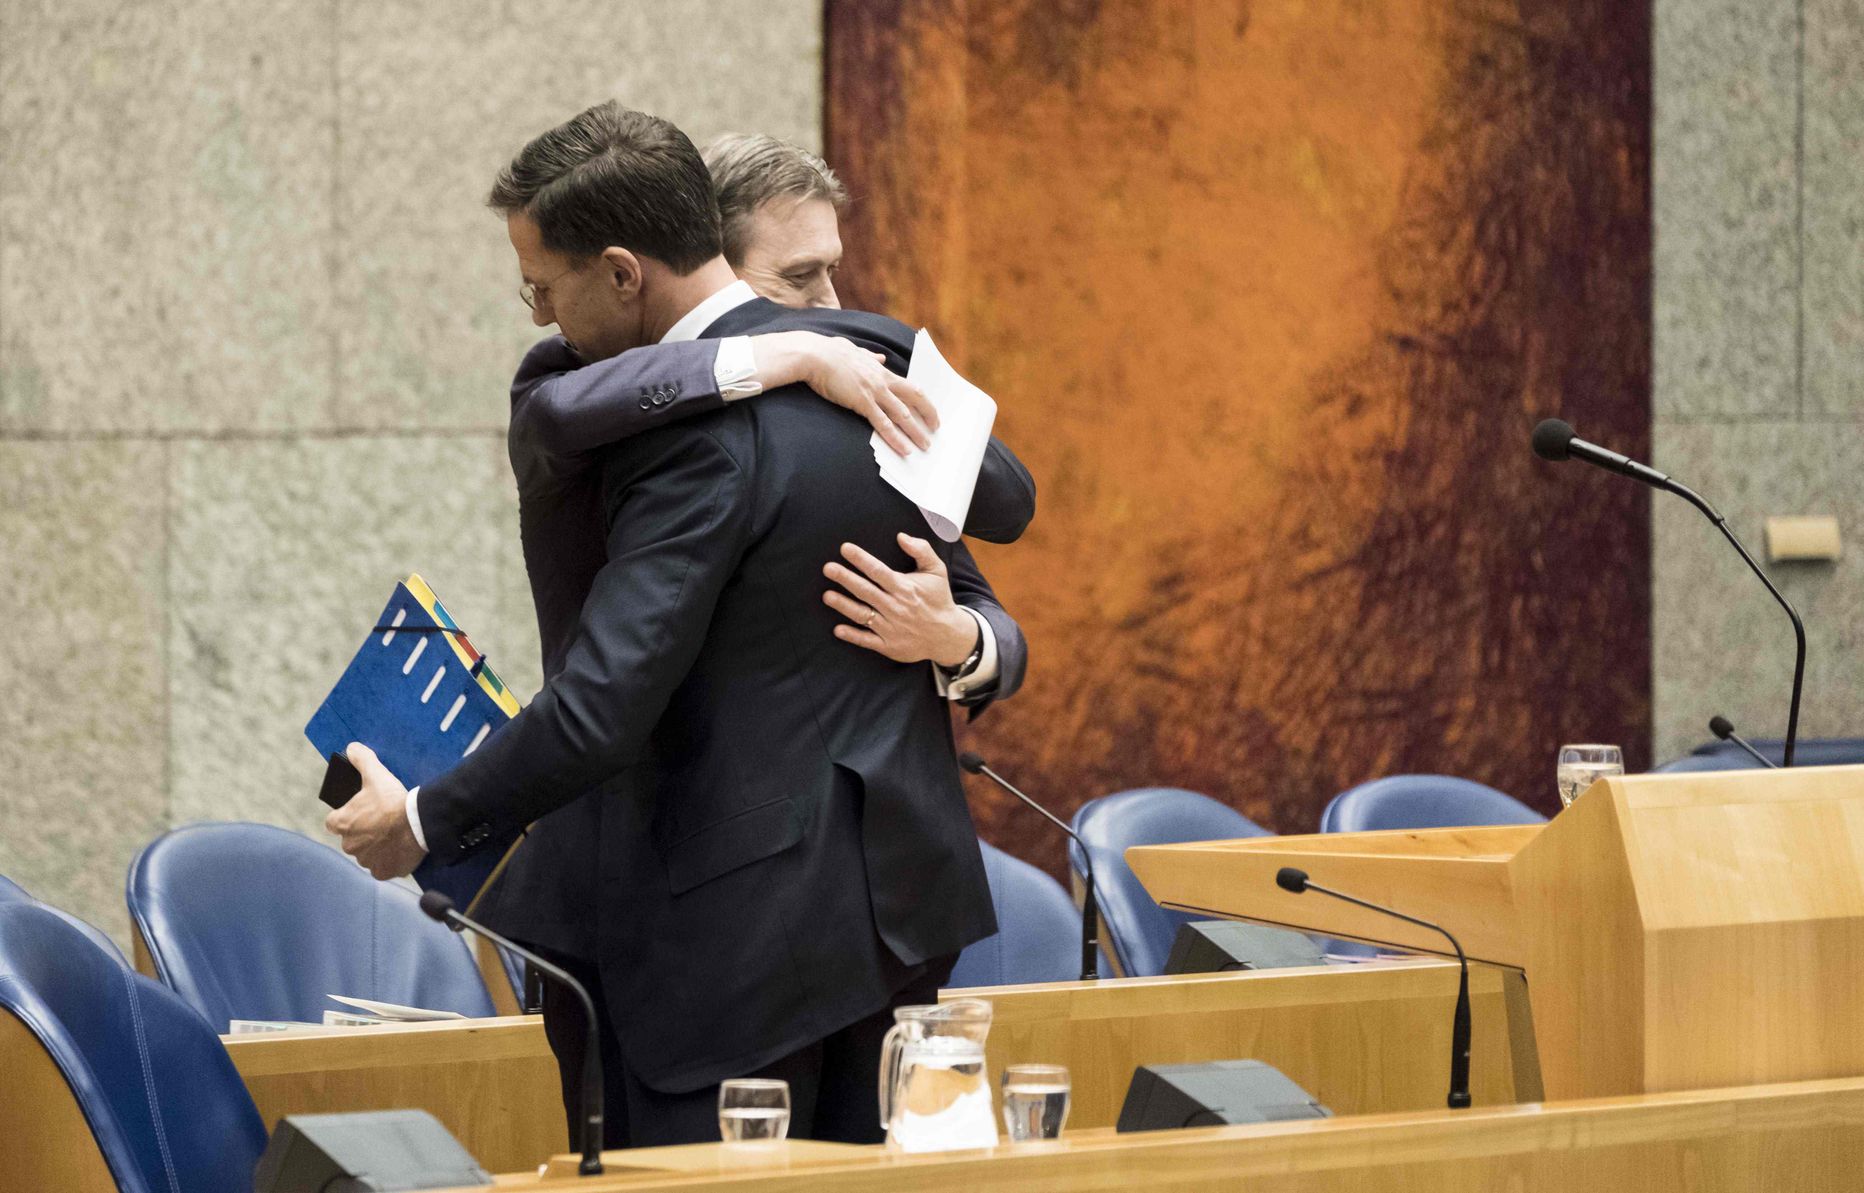 Halbe Zijlstra ja Mark Rutte kaisutavad pärast välisministri lahkumisavalduse esitamist.